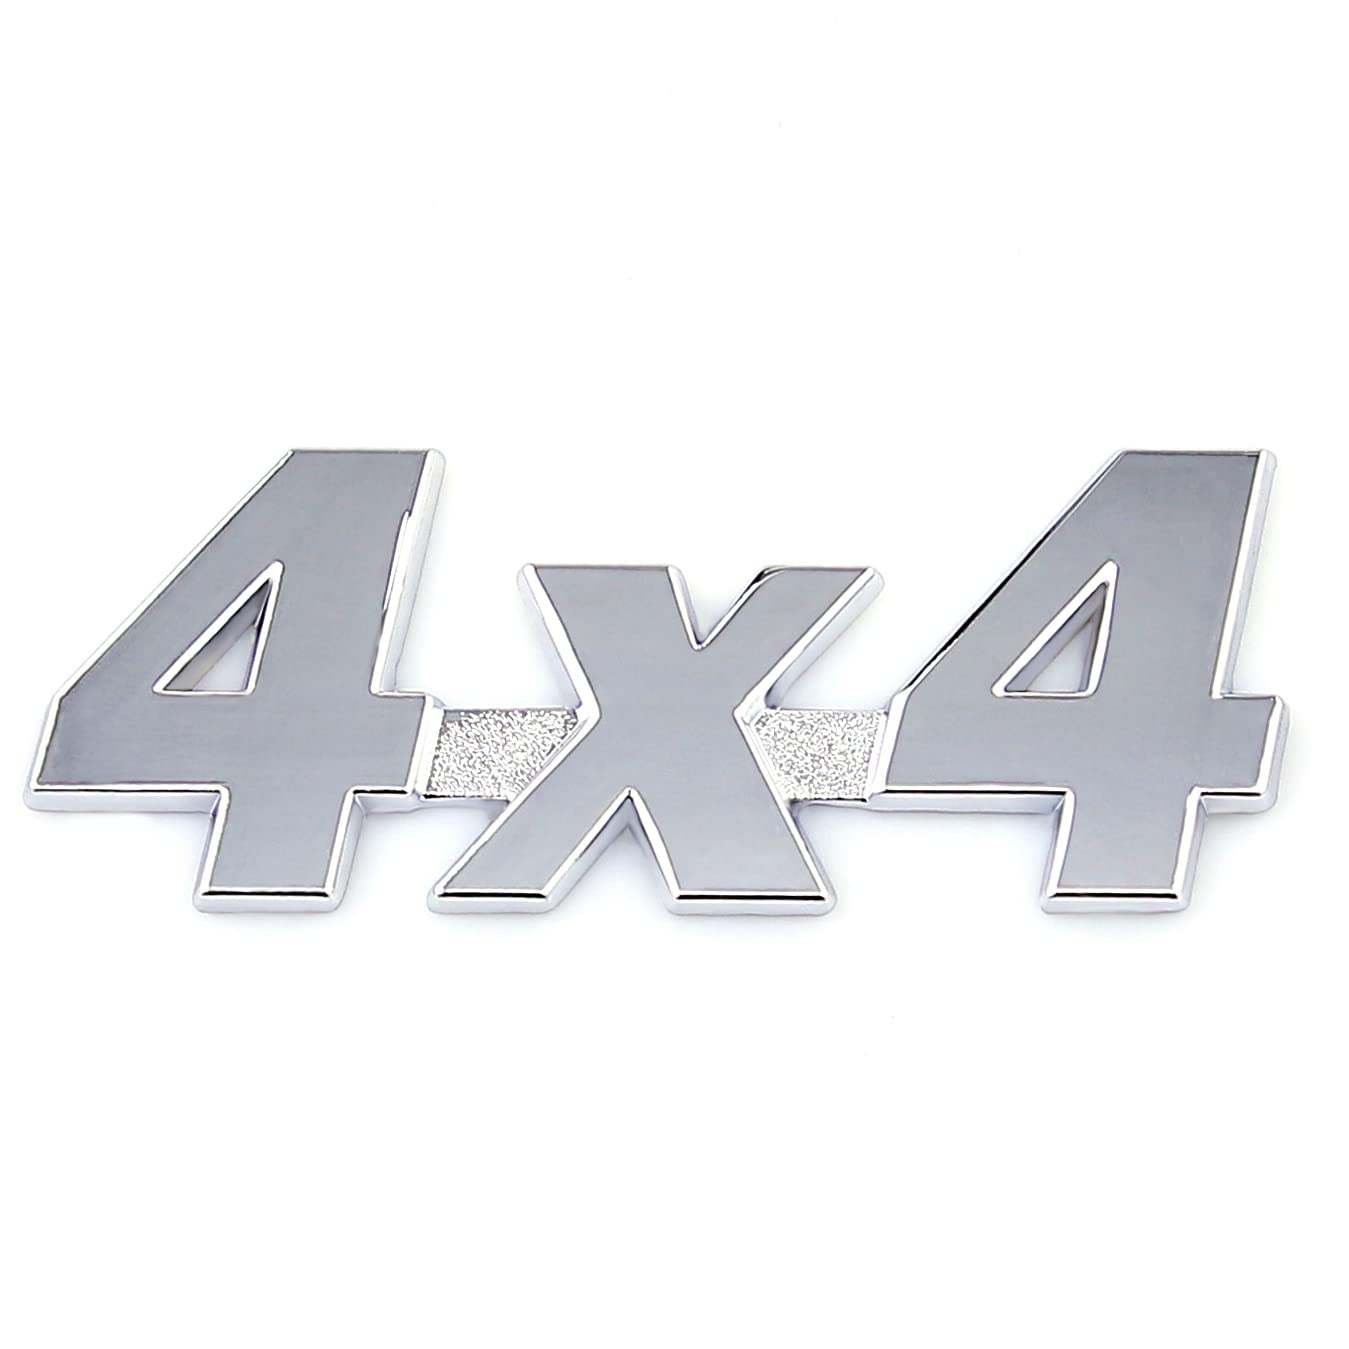 4 x 4 Emblem Allradantrieb 3D Metall Auto Side Fender Heck Kofferraum Emblem Abzeichen Aufkleber Aufkleber (Silber) von SGW